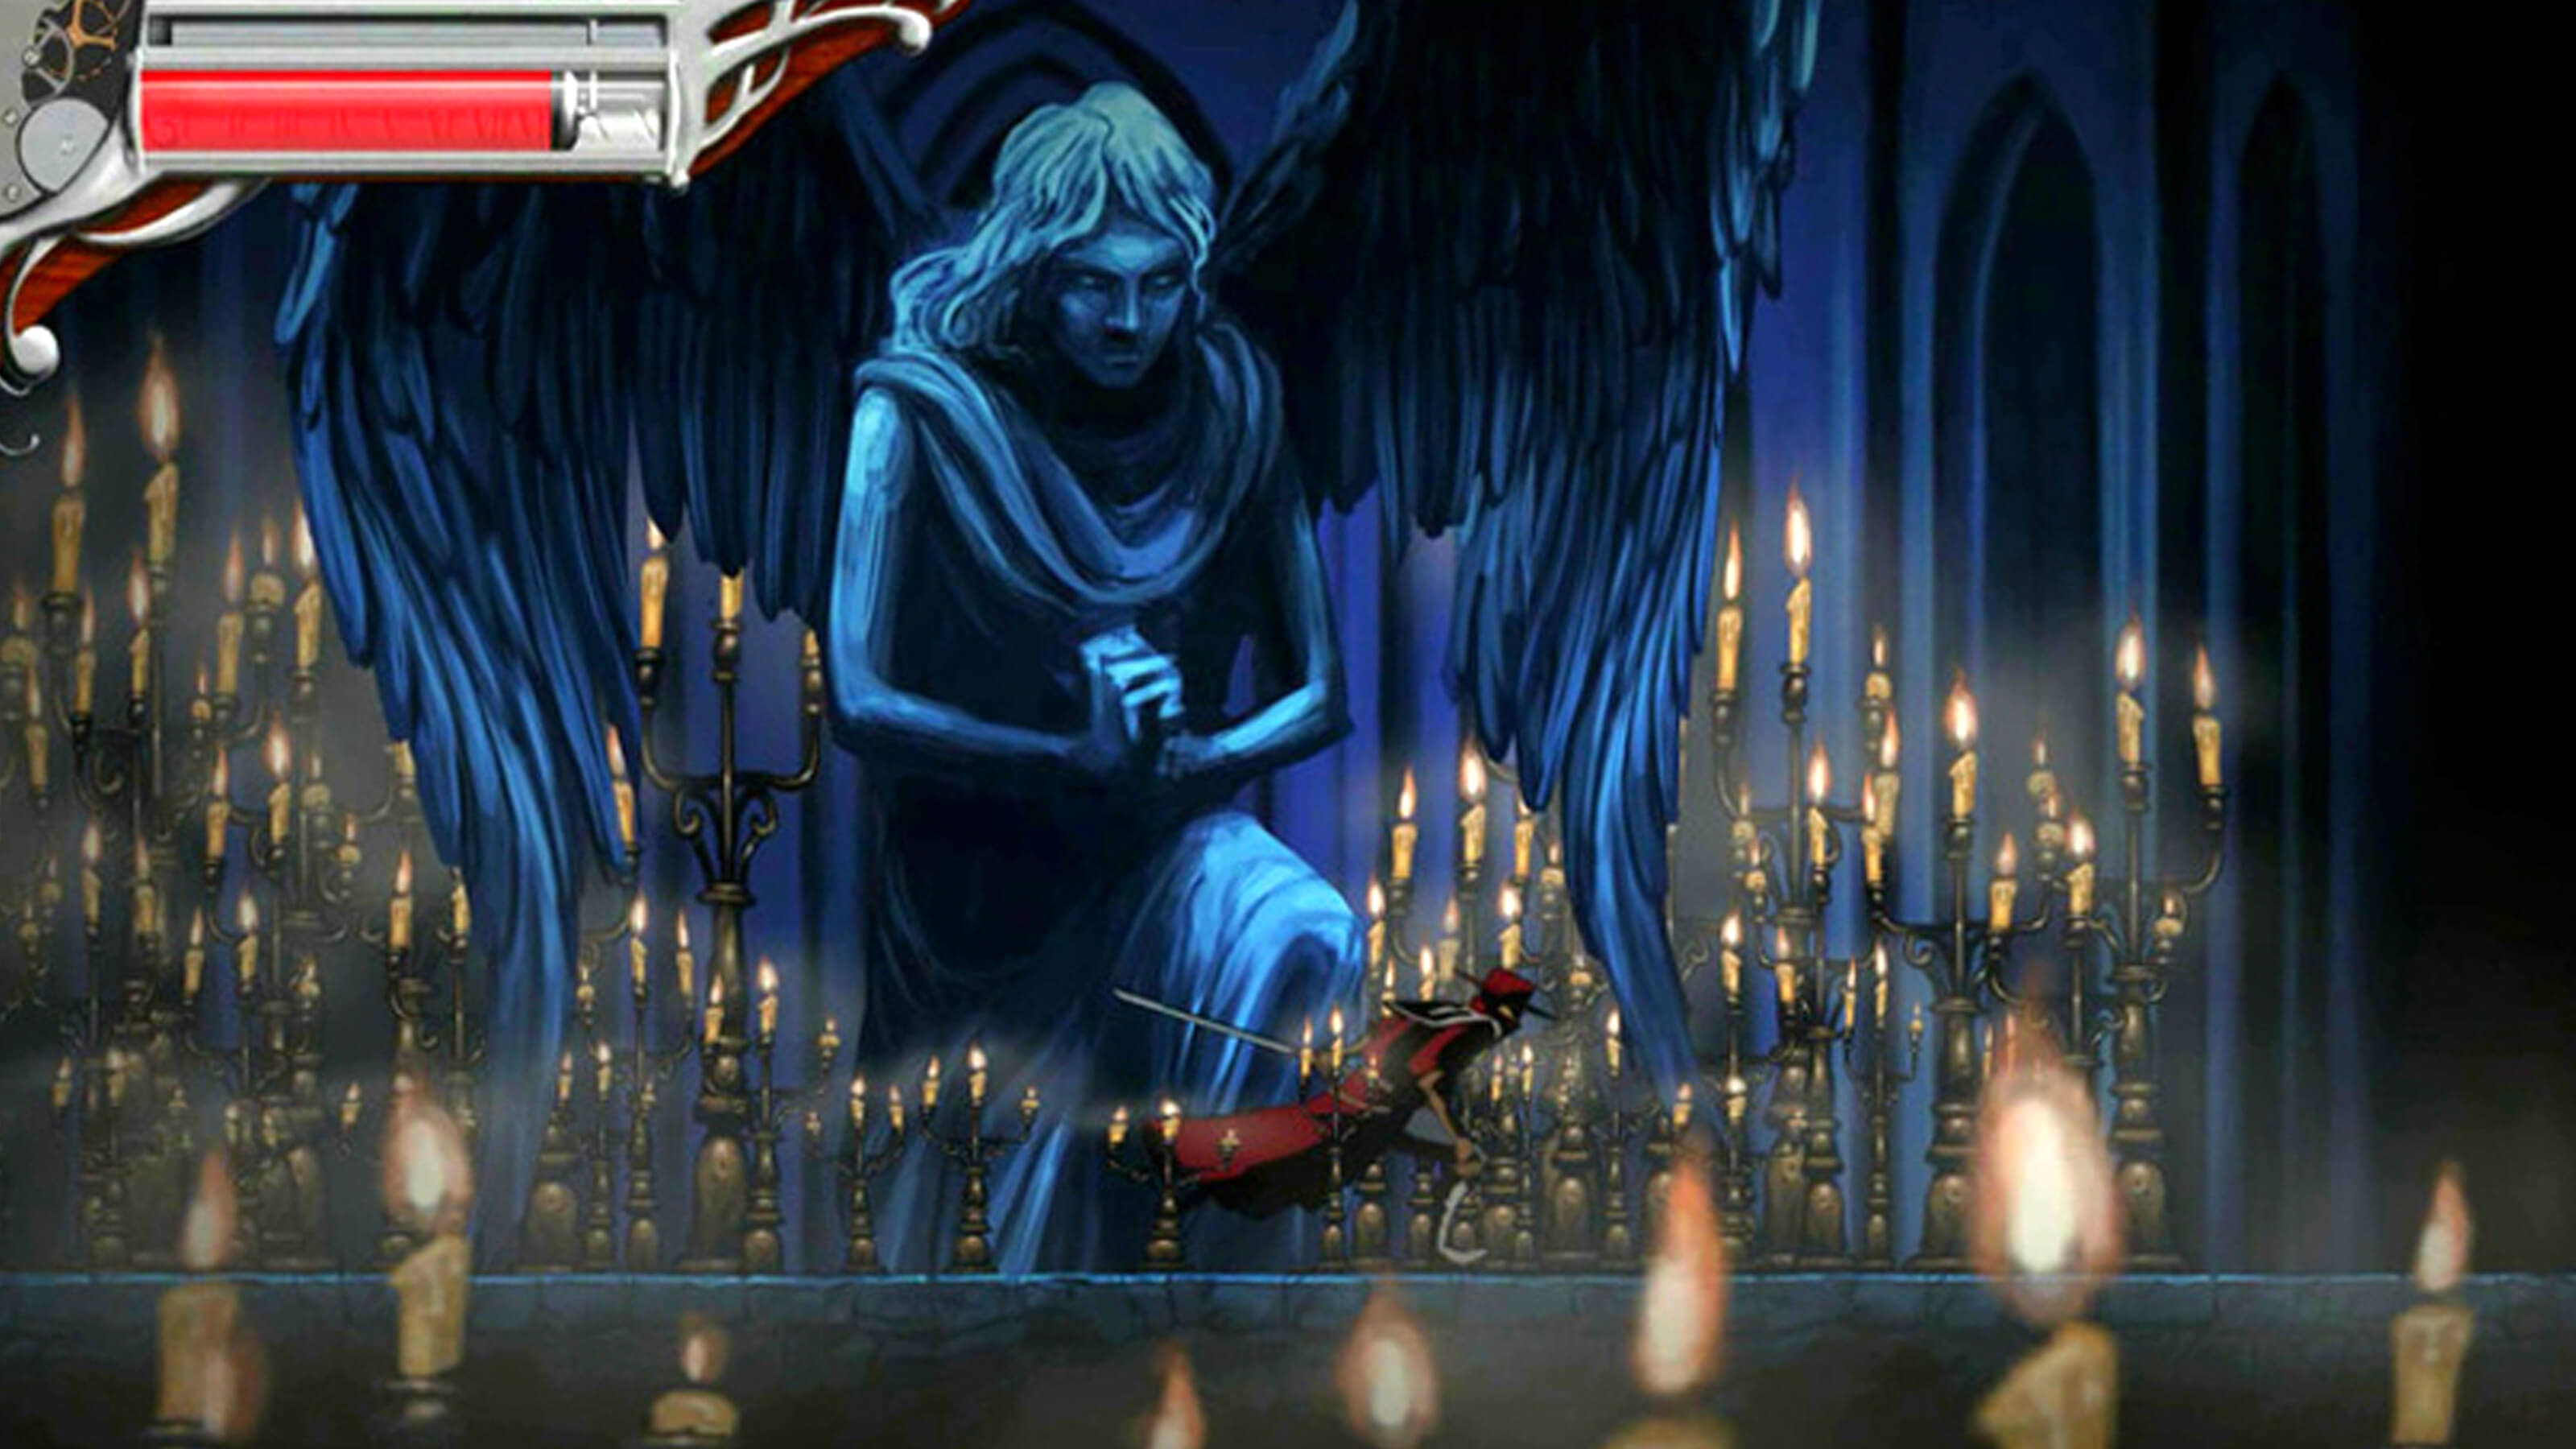 Un espadachín de rojo corre por delante de la espeluznante estatua de un ángel en un pasillo lleno de candelabros encendidos.